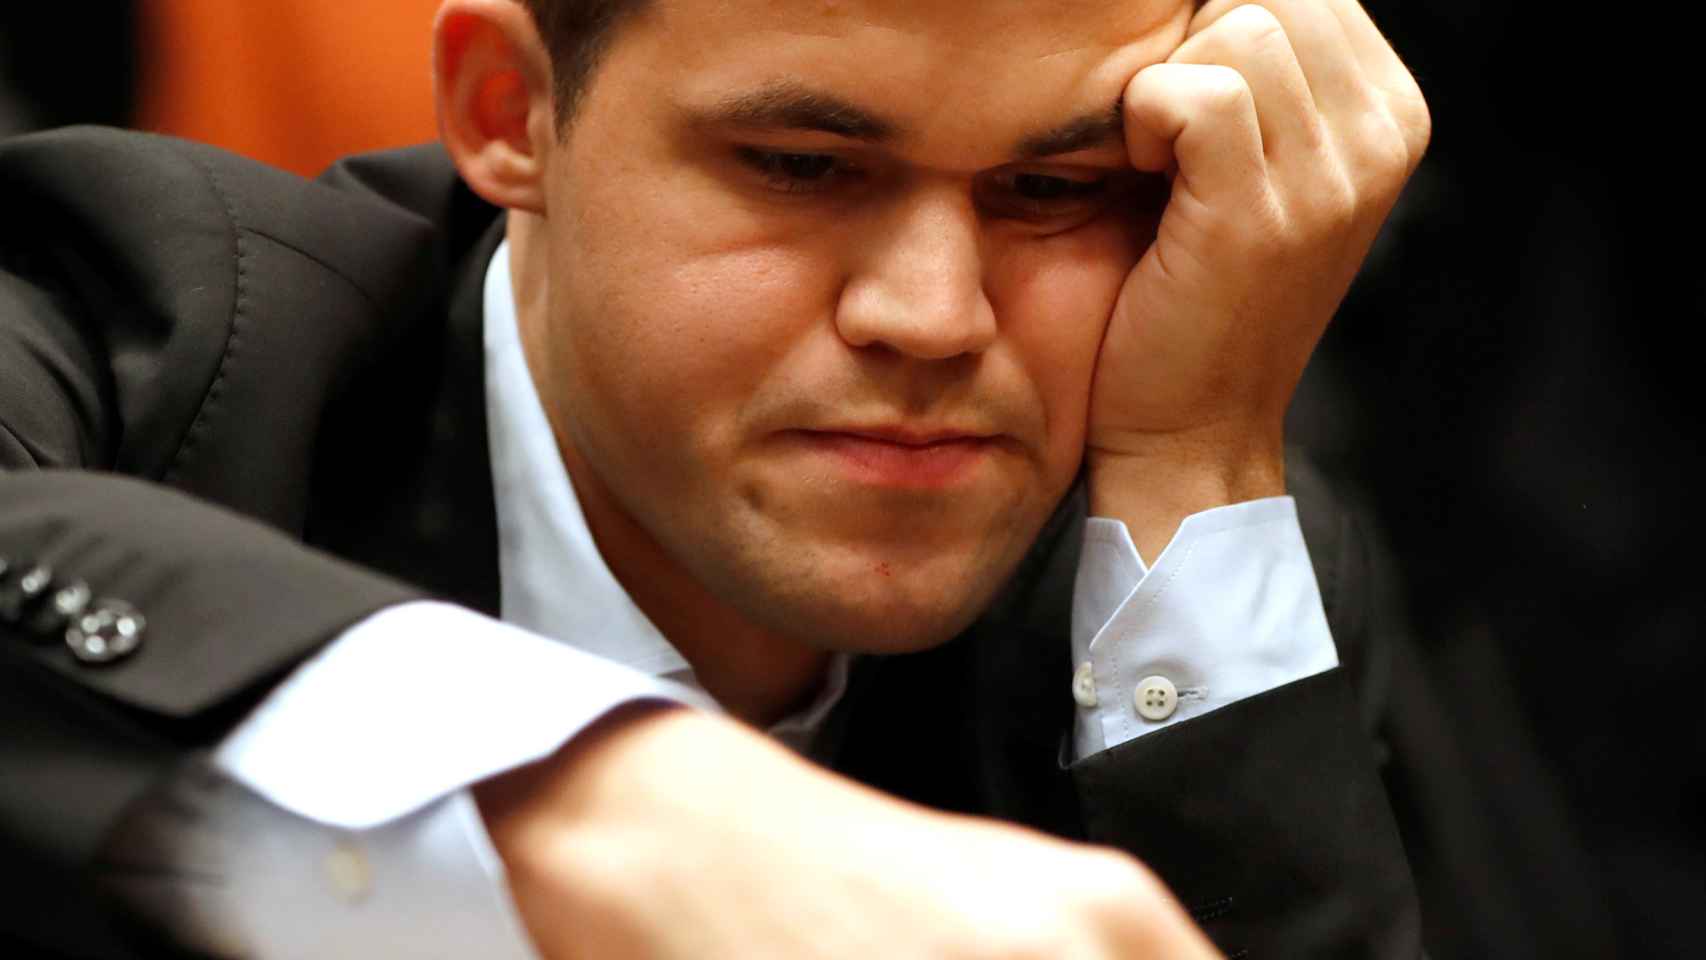 Carlsen, en el Mundial de Ajedrez, durante una partida